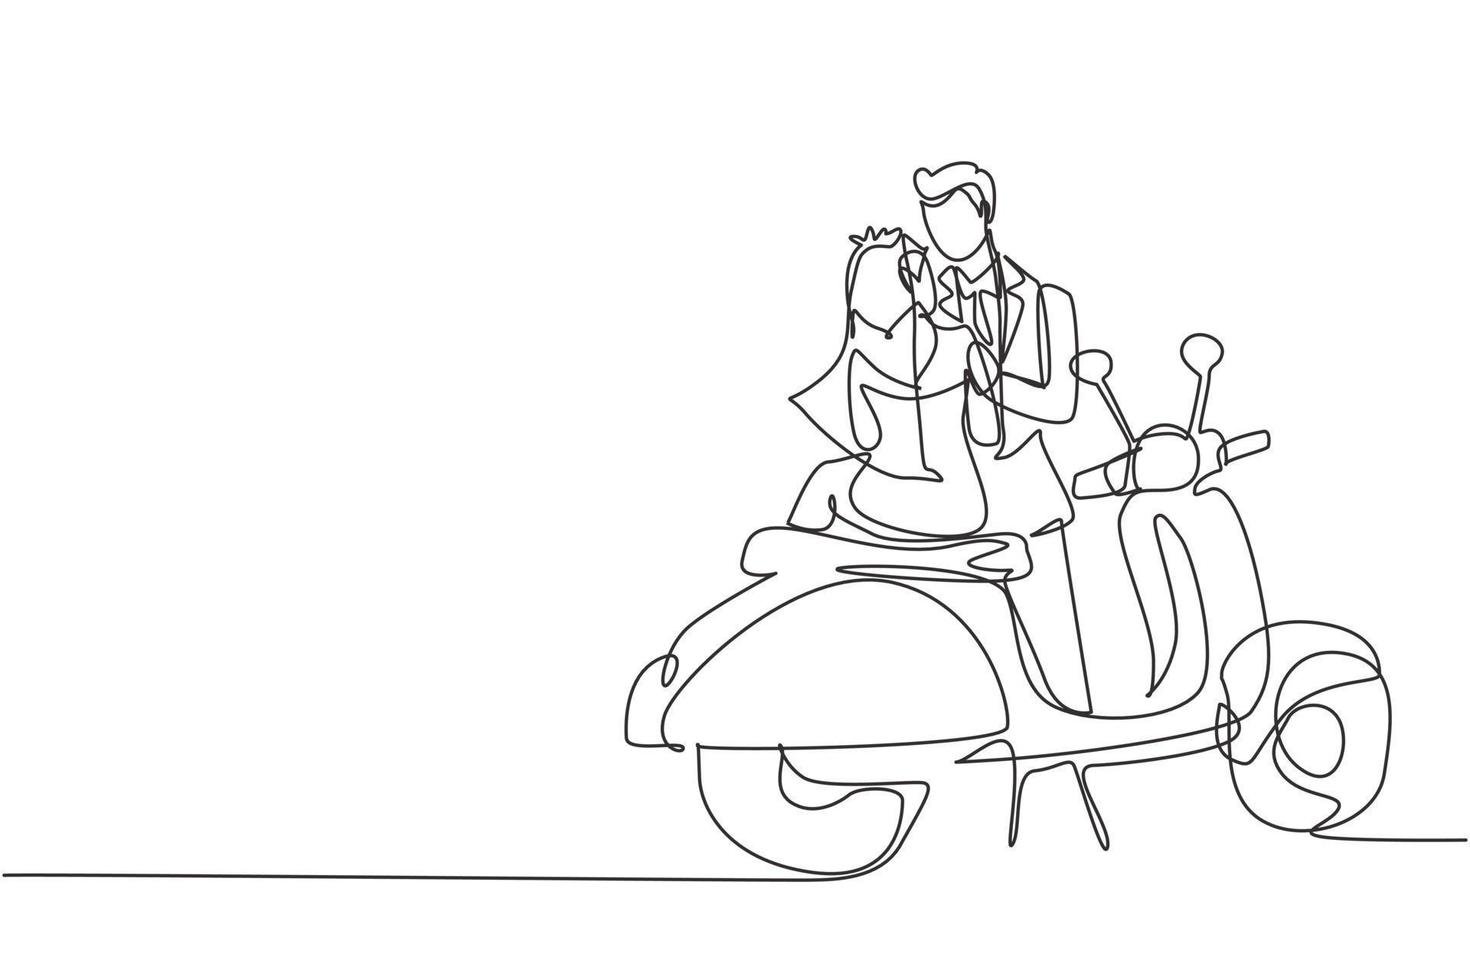 único desenho de uma linha casal com vestido de noiva. esposa e marido com scooter, relacionamento amoroso. viagem romântica, viagem. ilustração em vetor gráfico de desenho de linha contínua